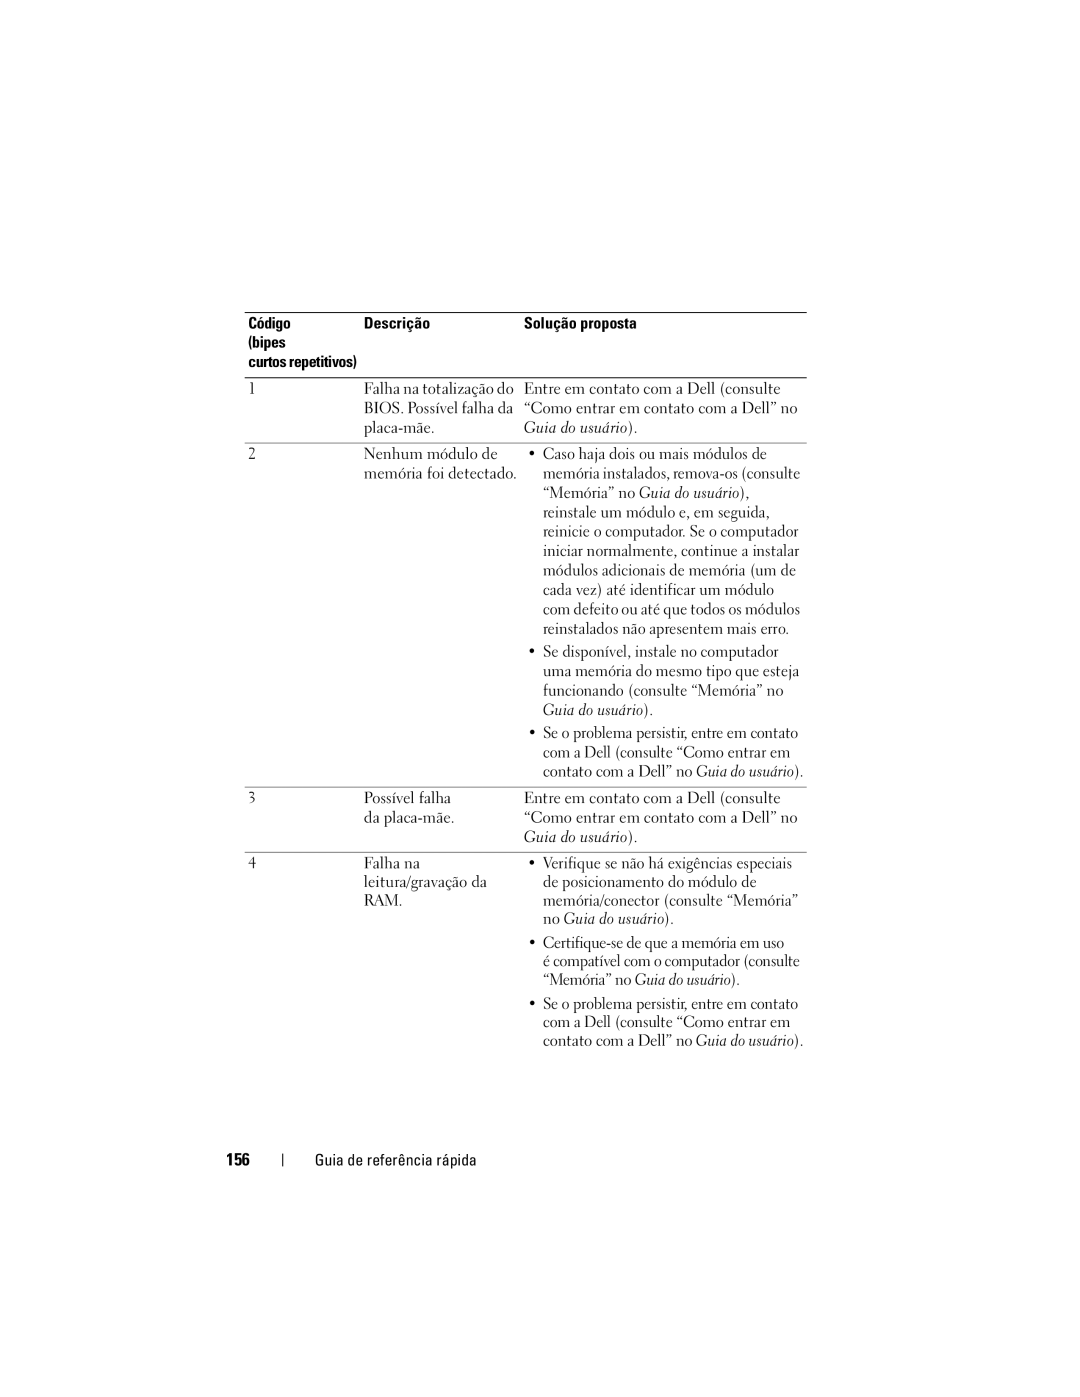 Dell DCDO manual 156, Código Descrição Solução proposta Bipes 